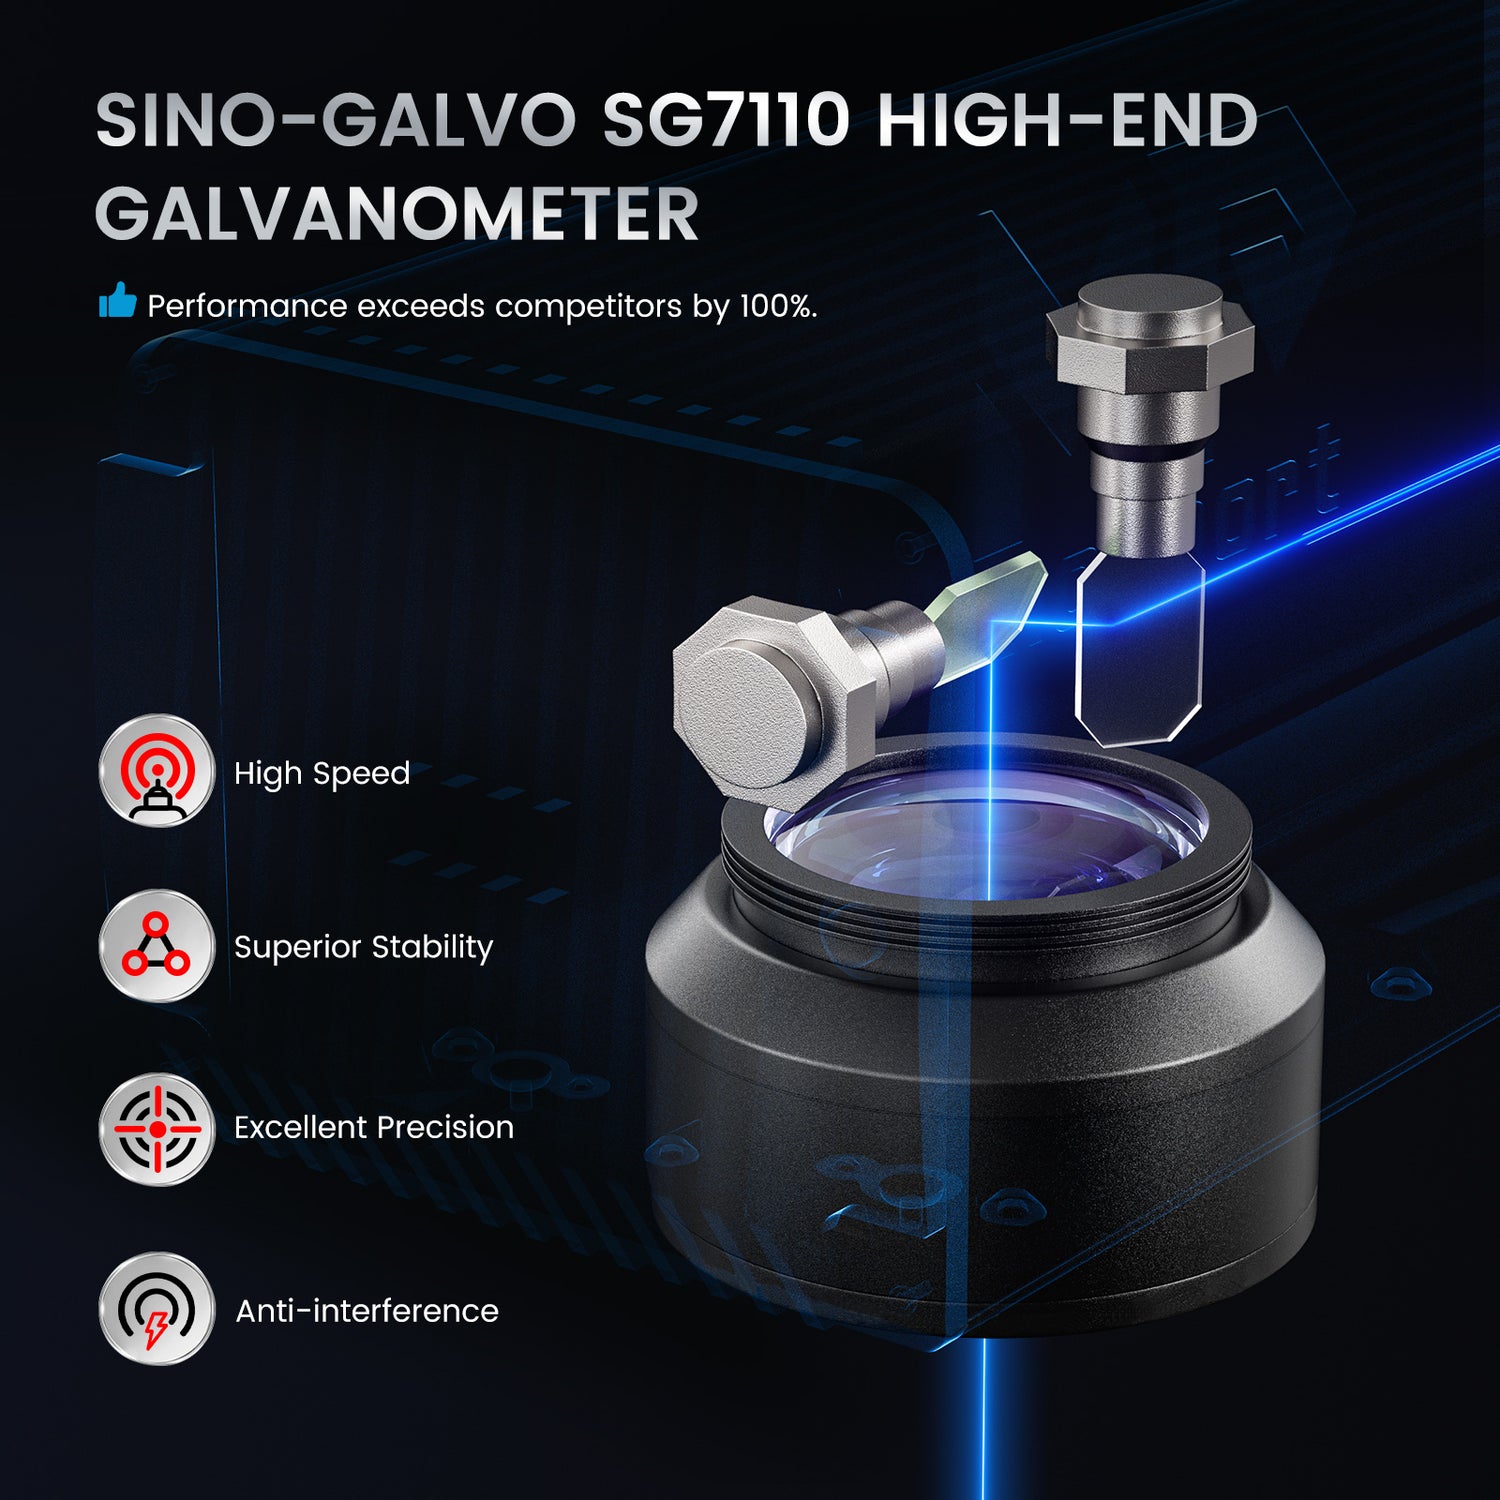 Premium Galvanometer